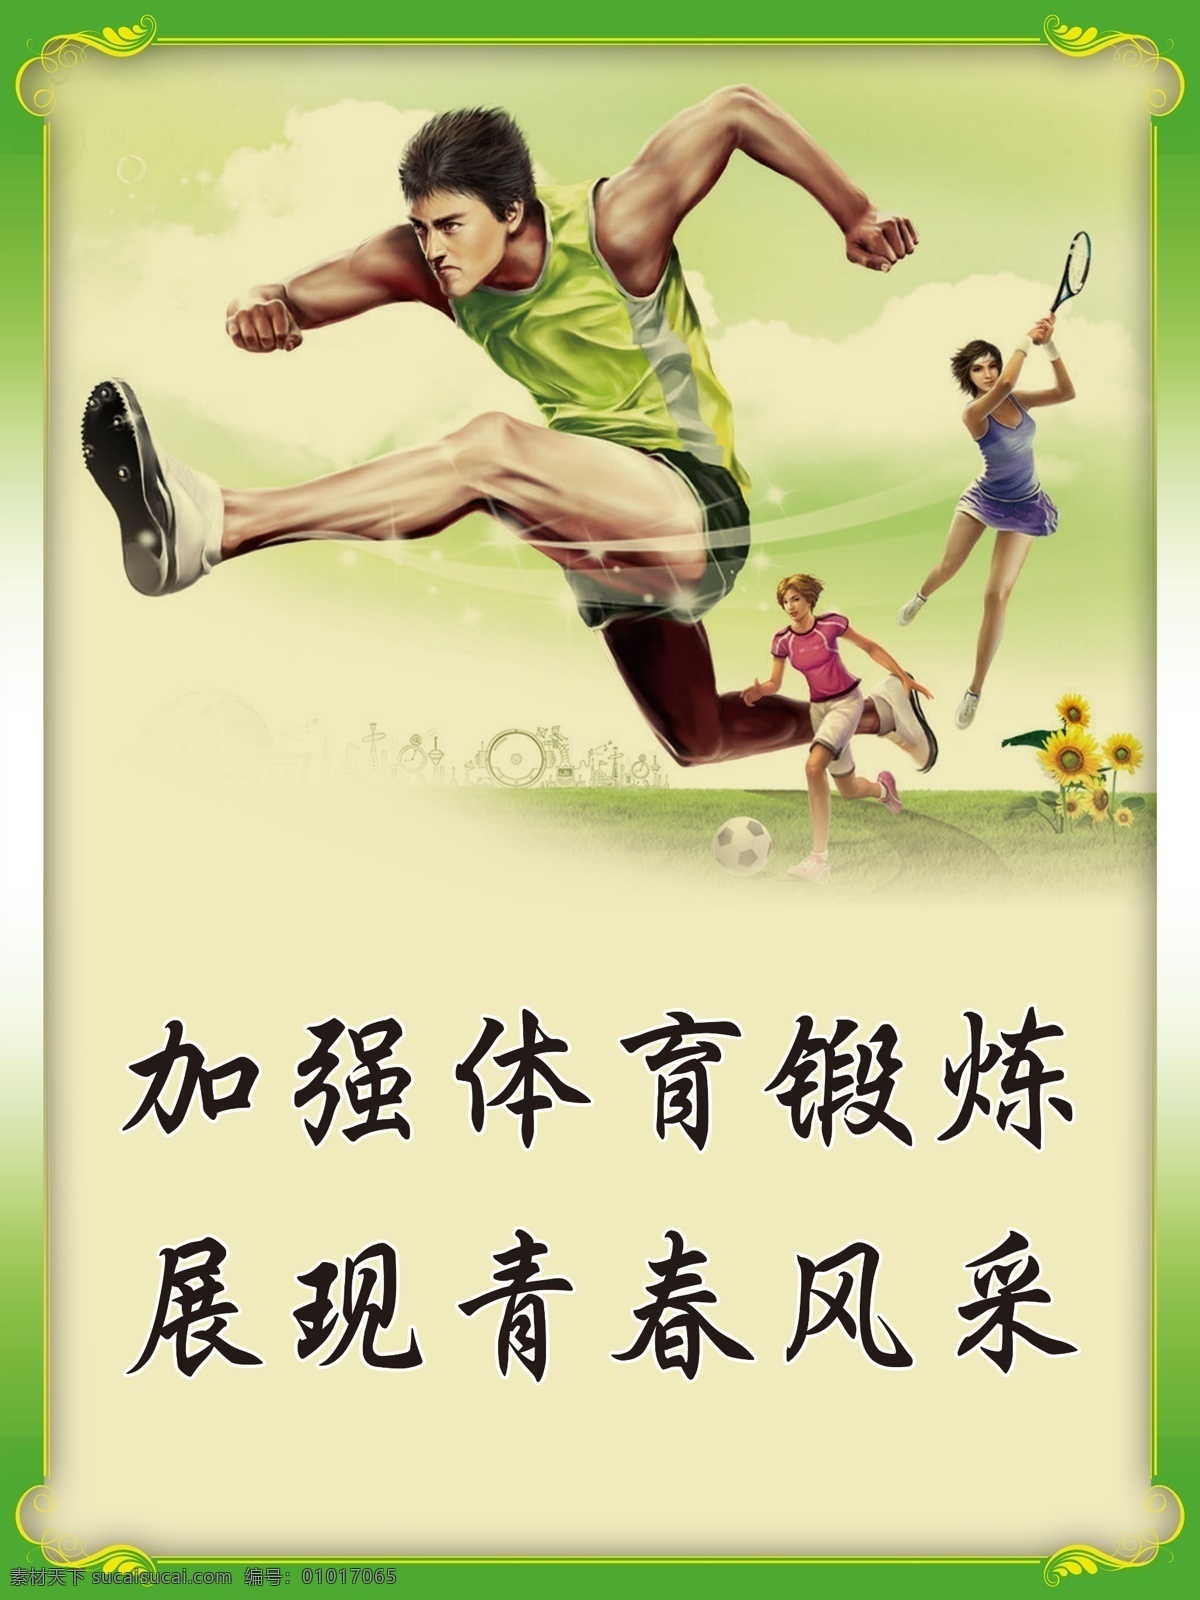 加强体育锻炼 展现青春风采 体育系 文明 标语 海报 黄色